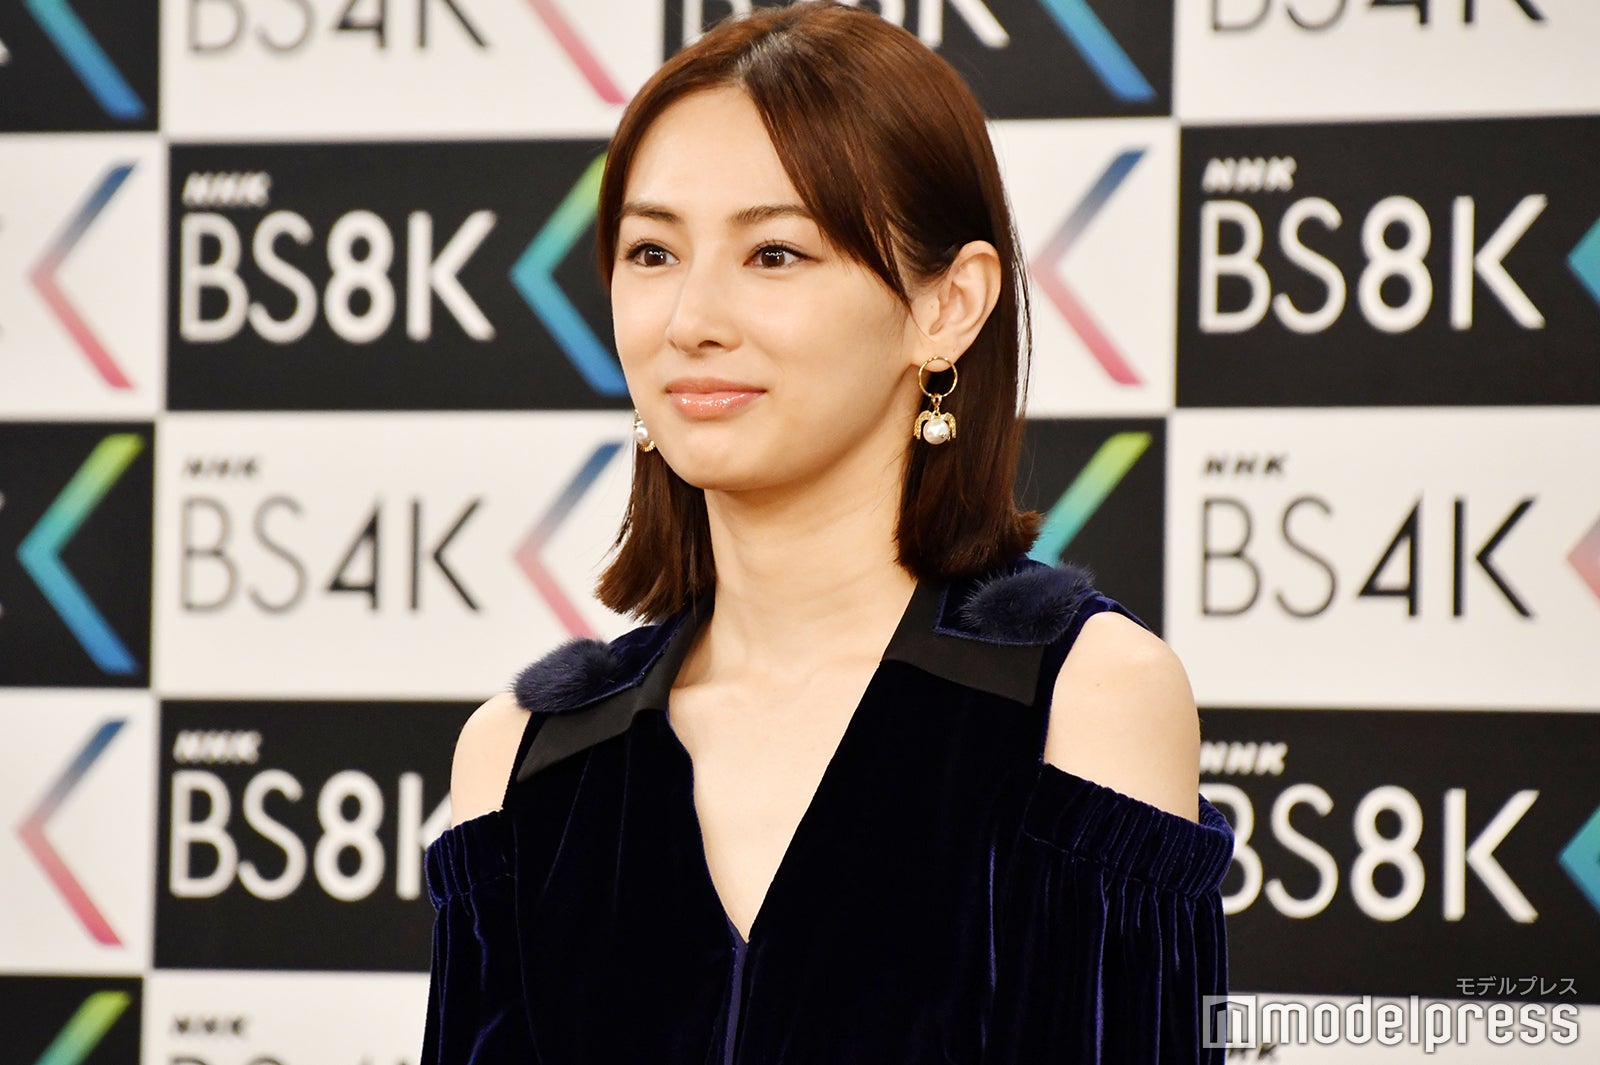 北川景子「8Kに耐えられる美しさ」と絶賛され照れる - モデルプレス